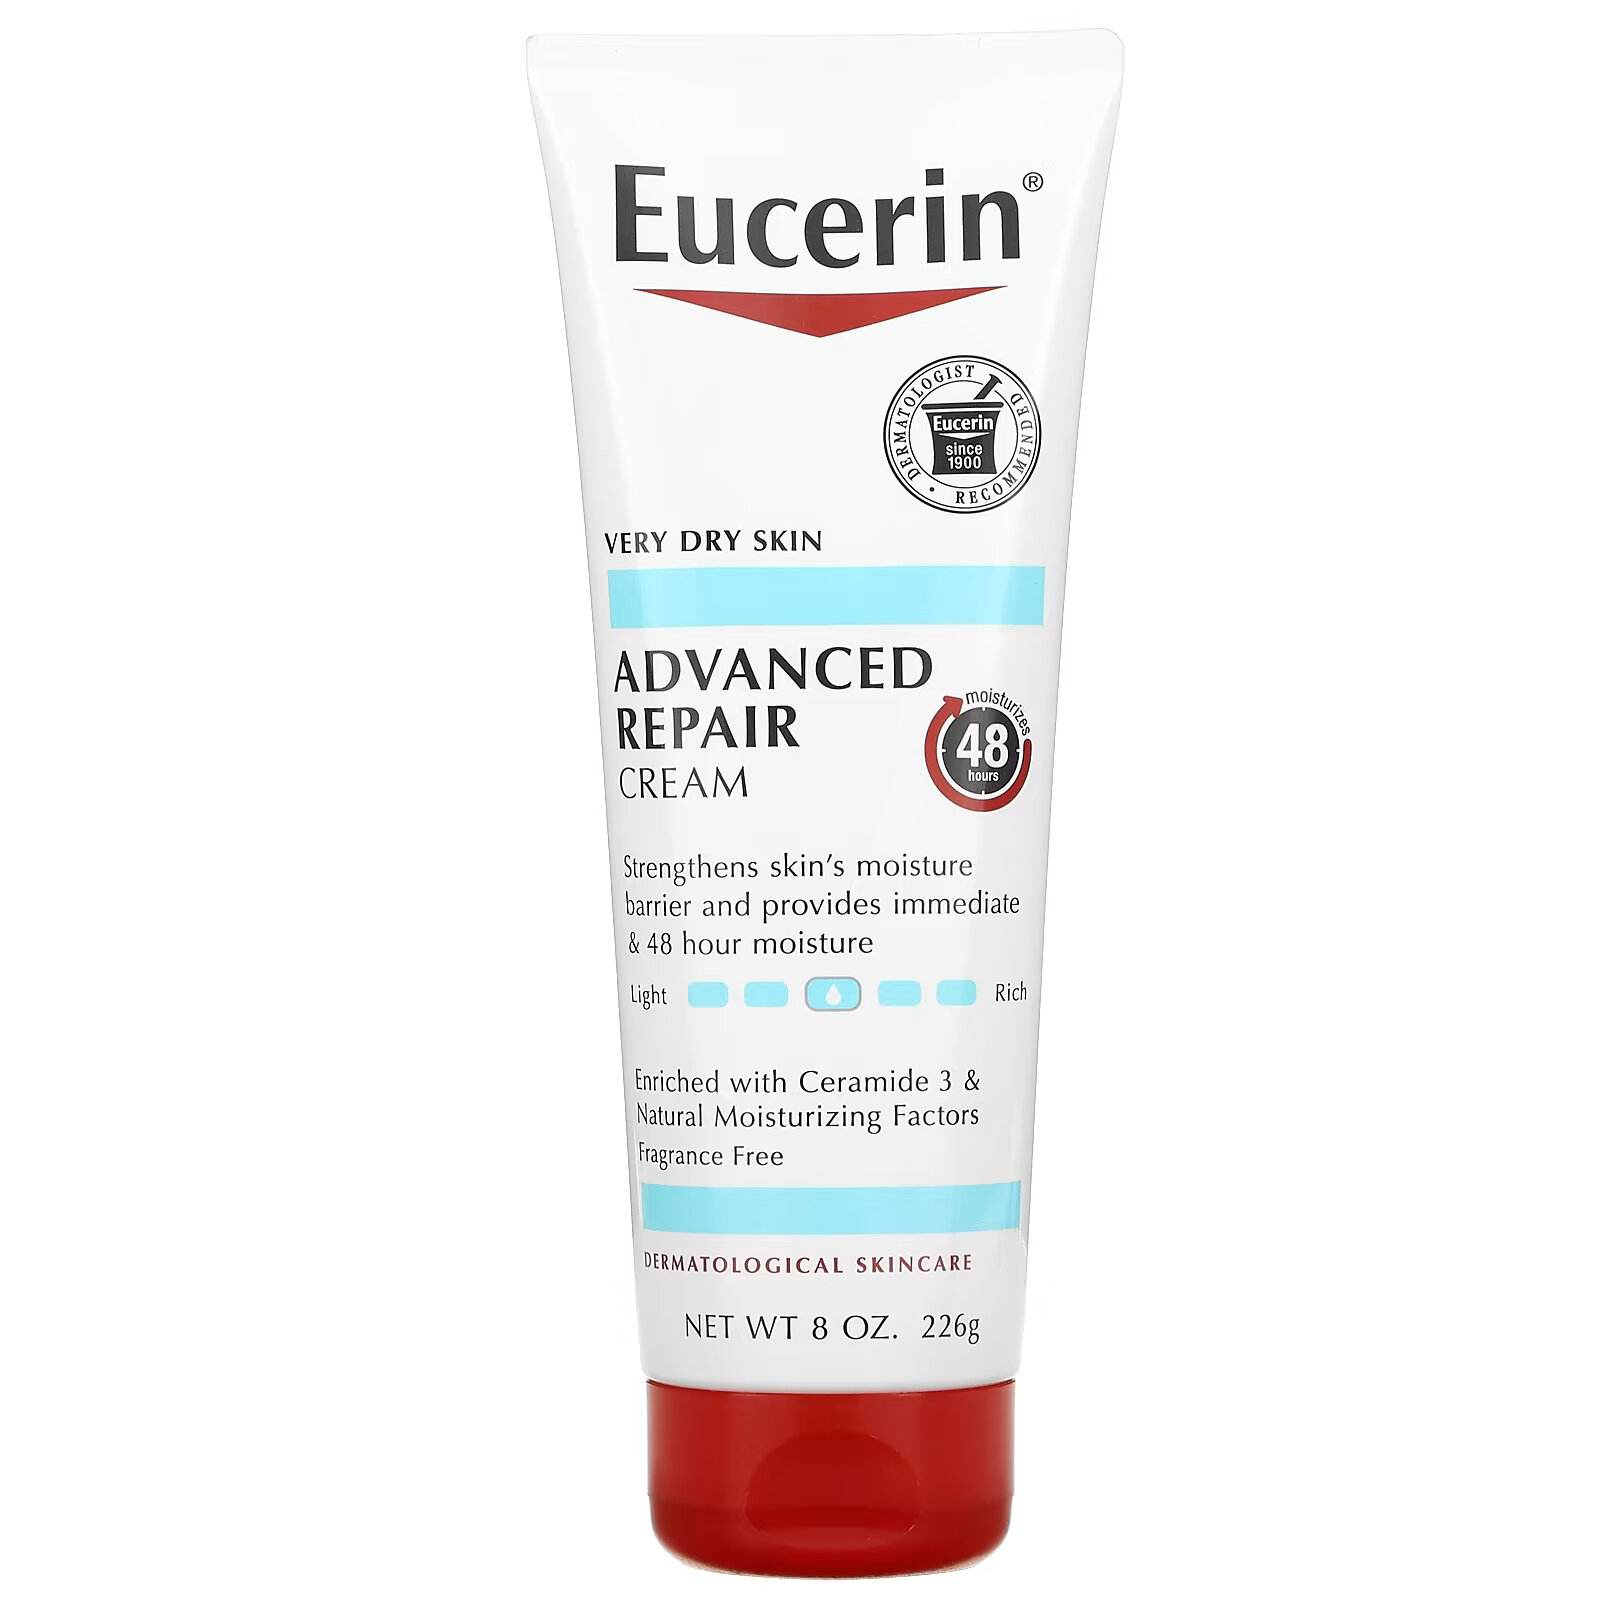 eucerin успокаивающий крем для сухой раздраженной кожи без отдушек 226 г 8 унций Eucerin, Улучшенный восстанавливающий крем, без отдушек, 226 г